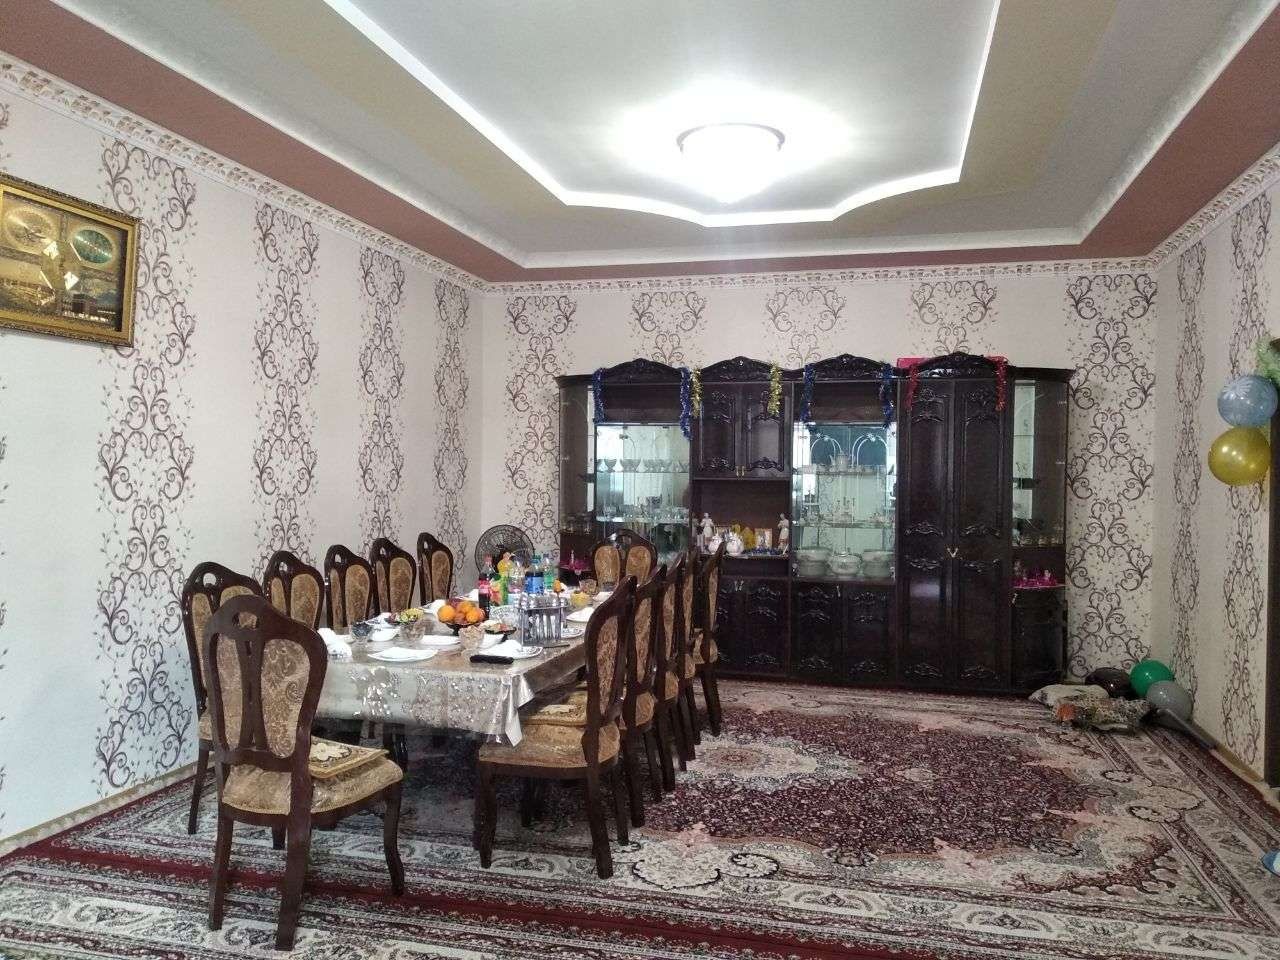 Продаётся уютный дом в Мирзо-Улугбекском районе, город Ташкент.